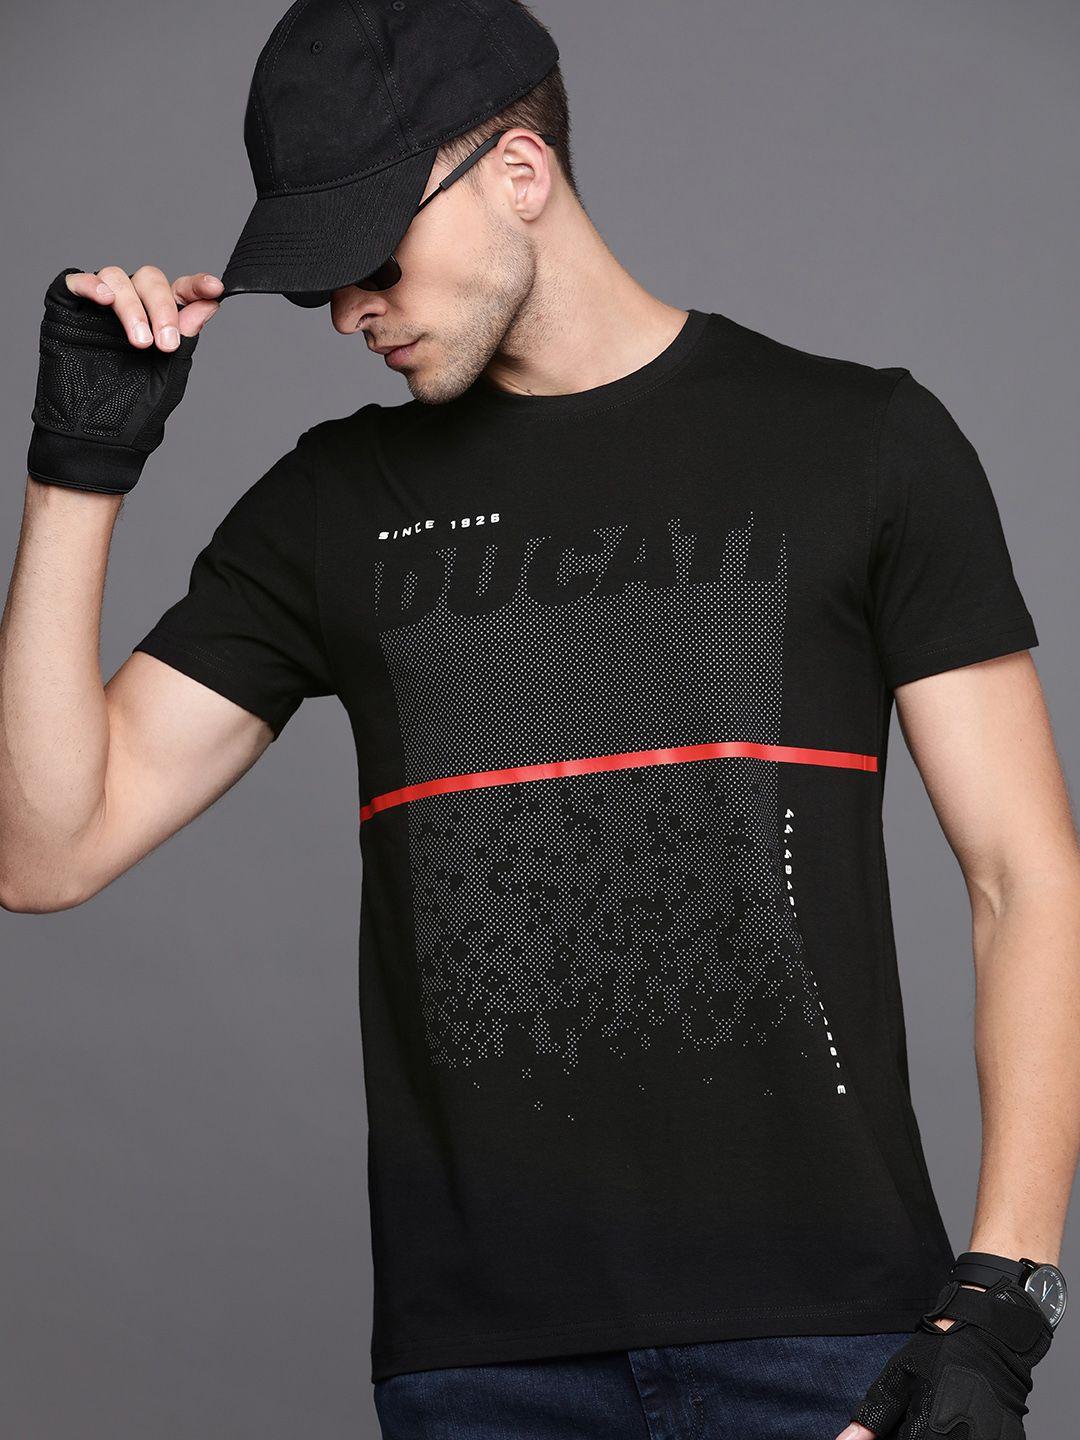 ducati-men-black-&-charcoal-grey-printed-t-shirt